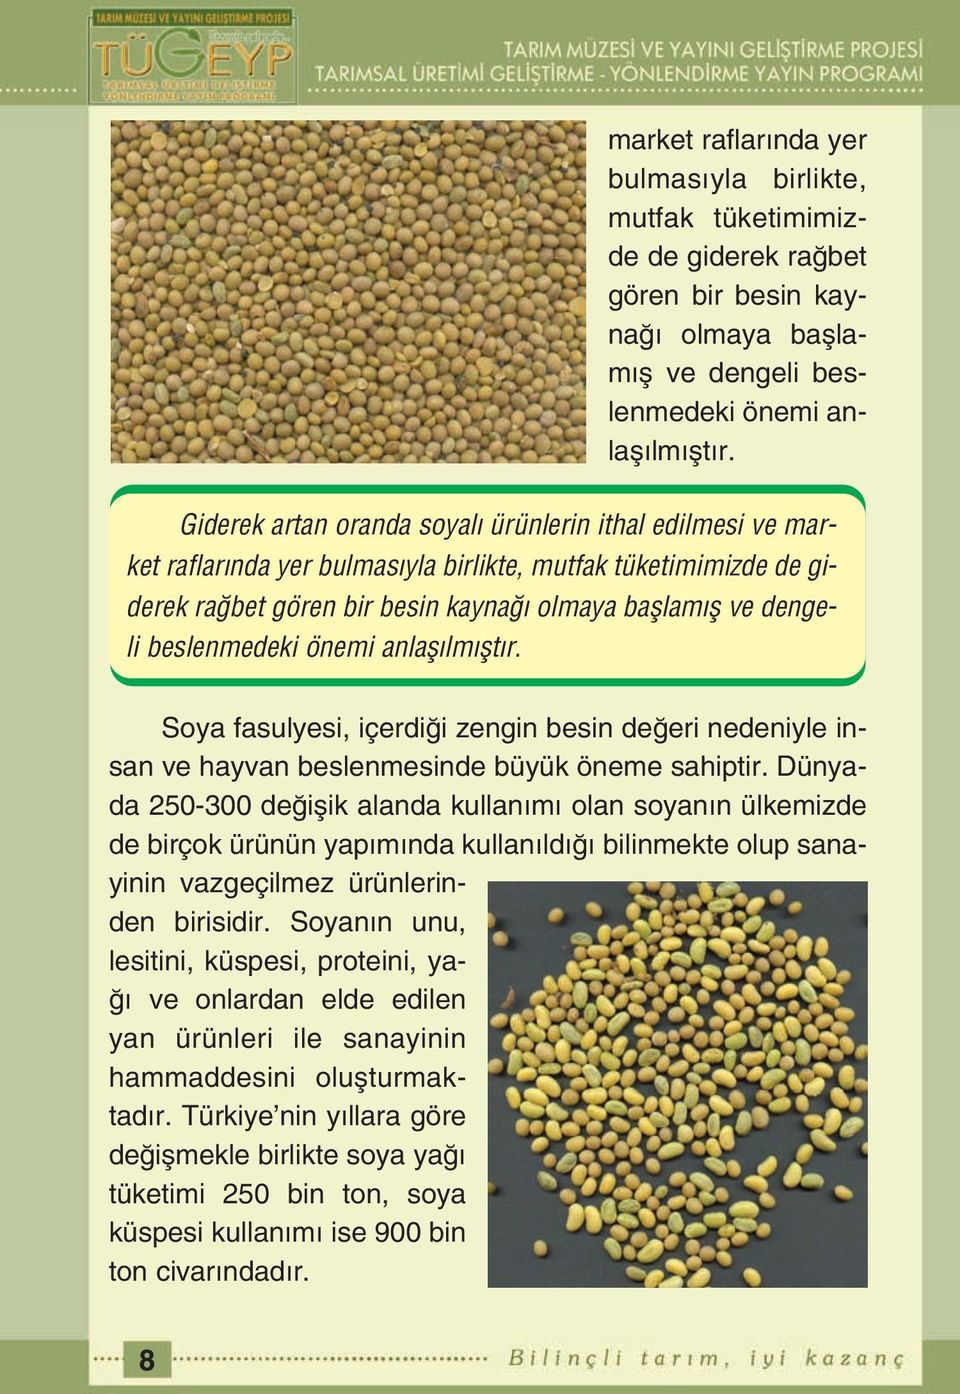 Dünyada 250-300 de iflik alanda kullan m olan soyan n ülkemizde de birçok ürünün yap m nda kullan ld bilinmekte olup sanayinin vazgeçilmez ürünlerinden birisidir.